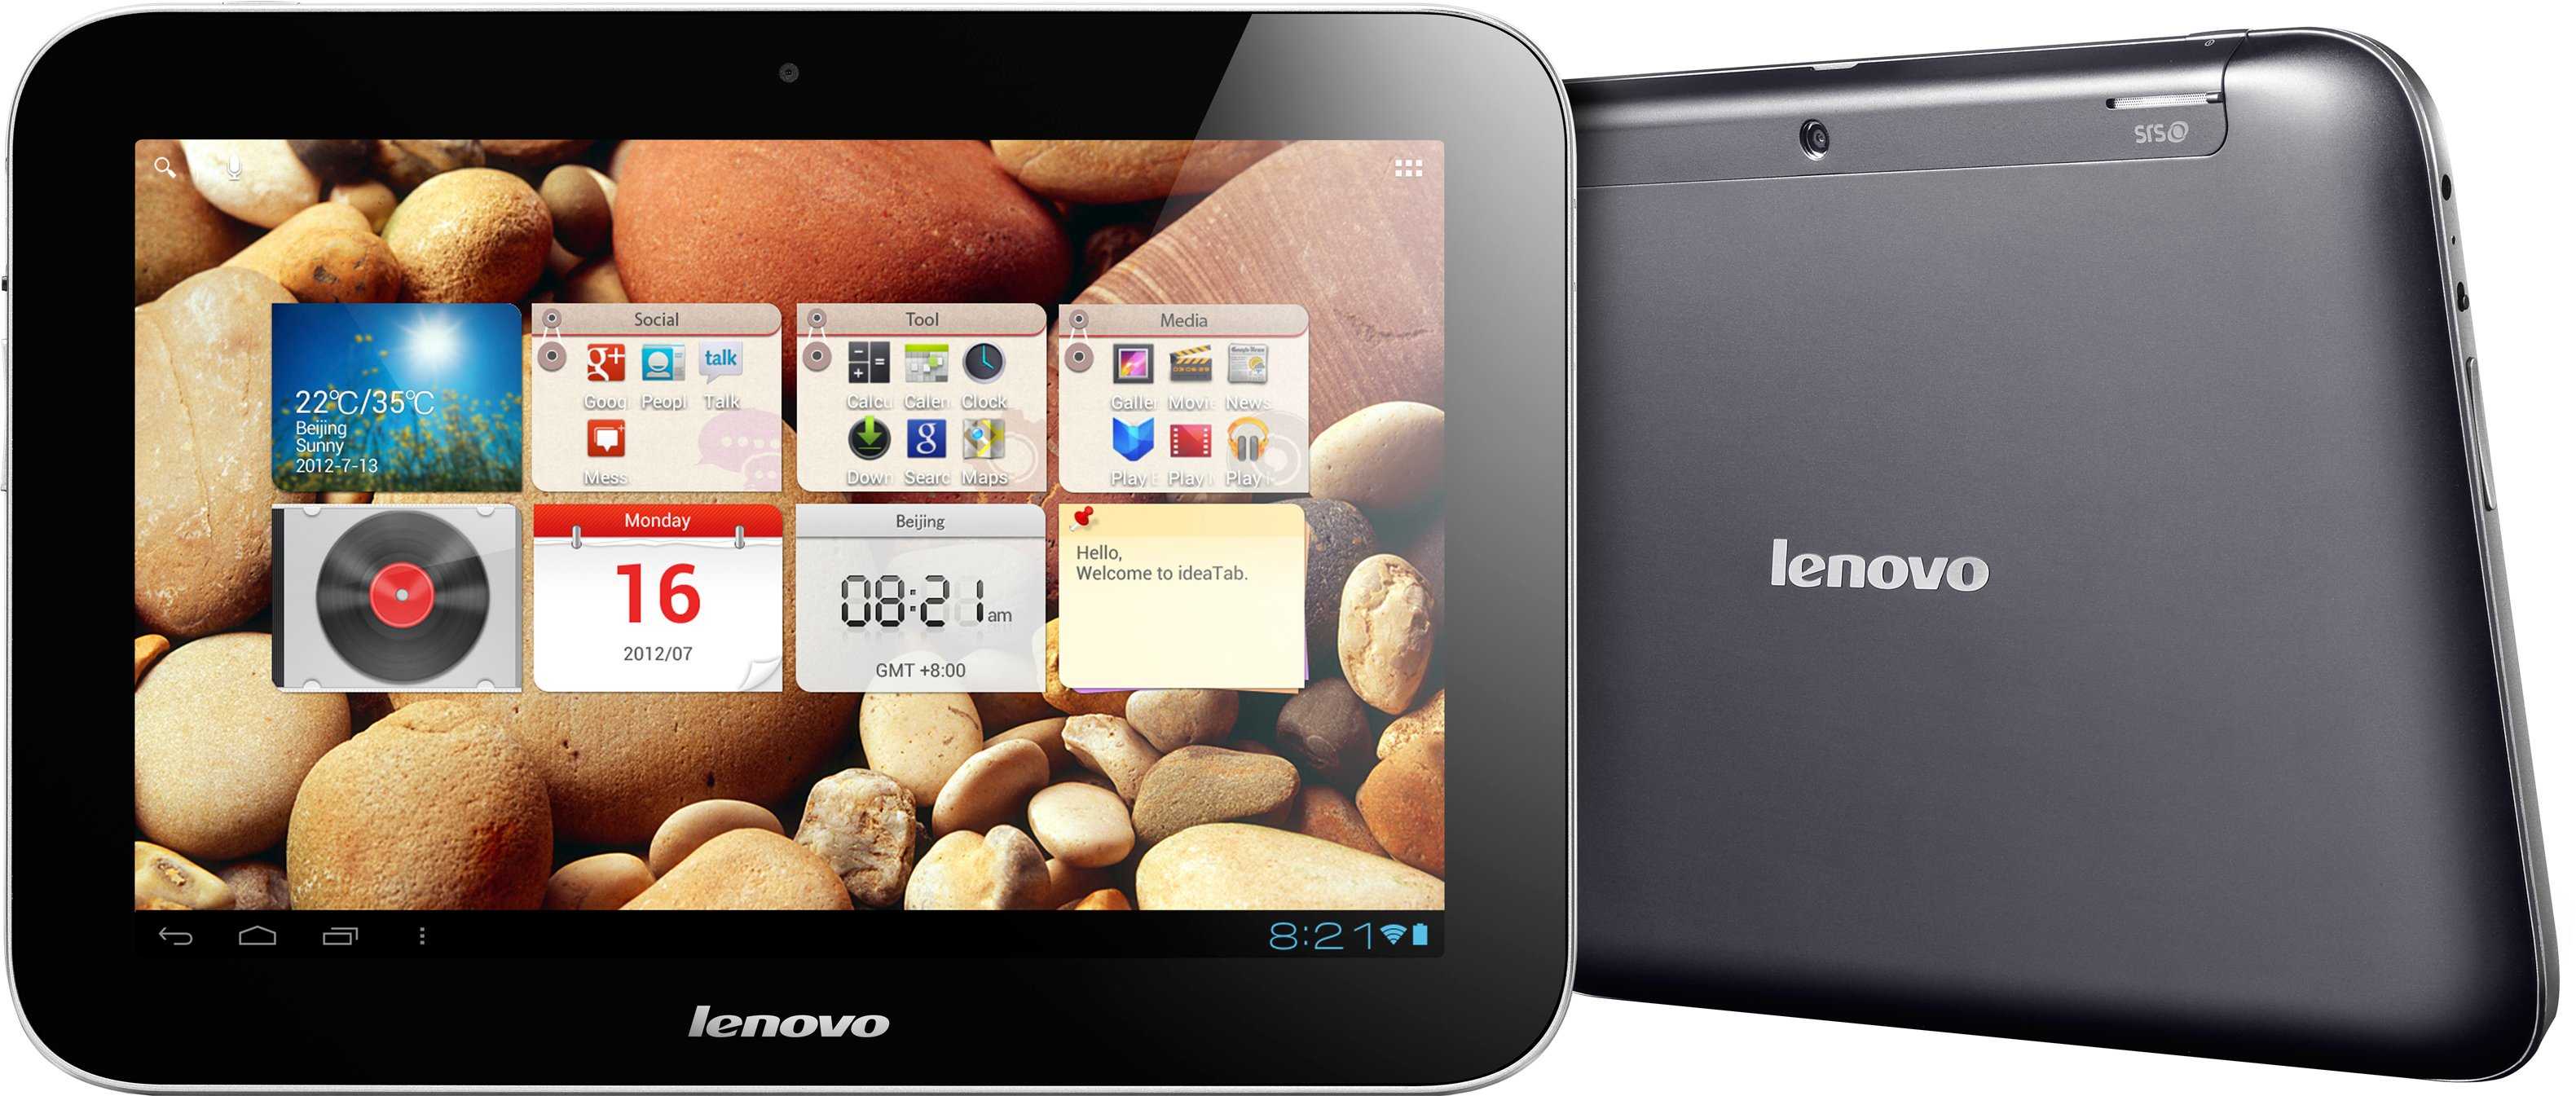 Lenovo ideatab s2109 8gb купить по акционной цене , отзывы и обзоры.